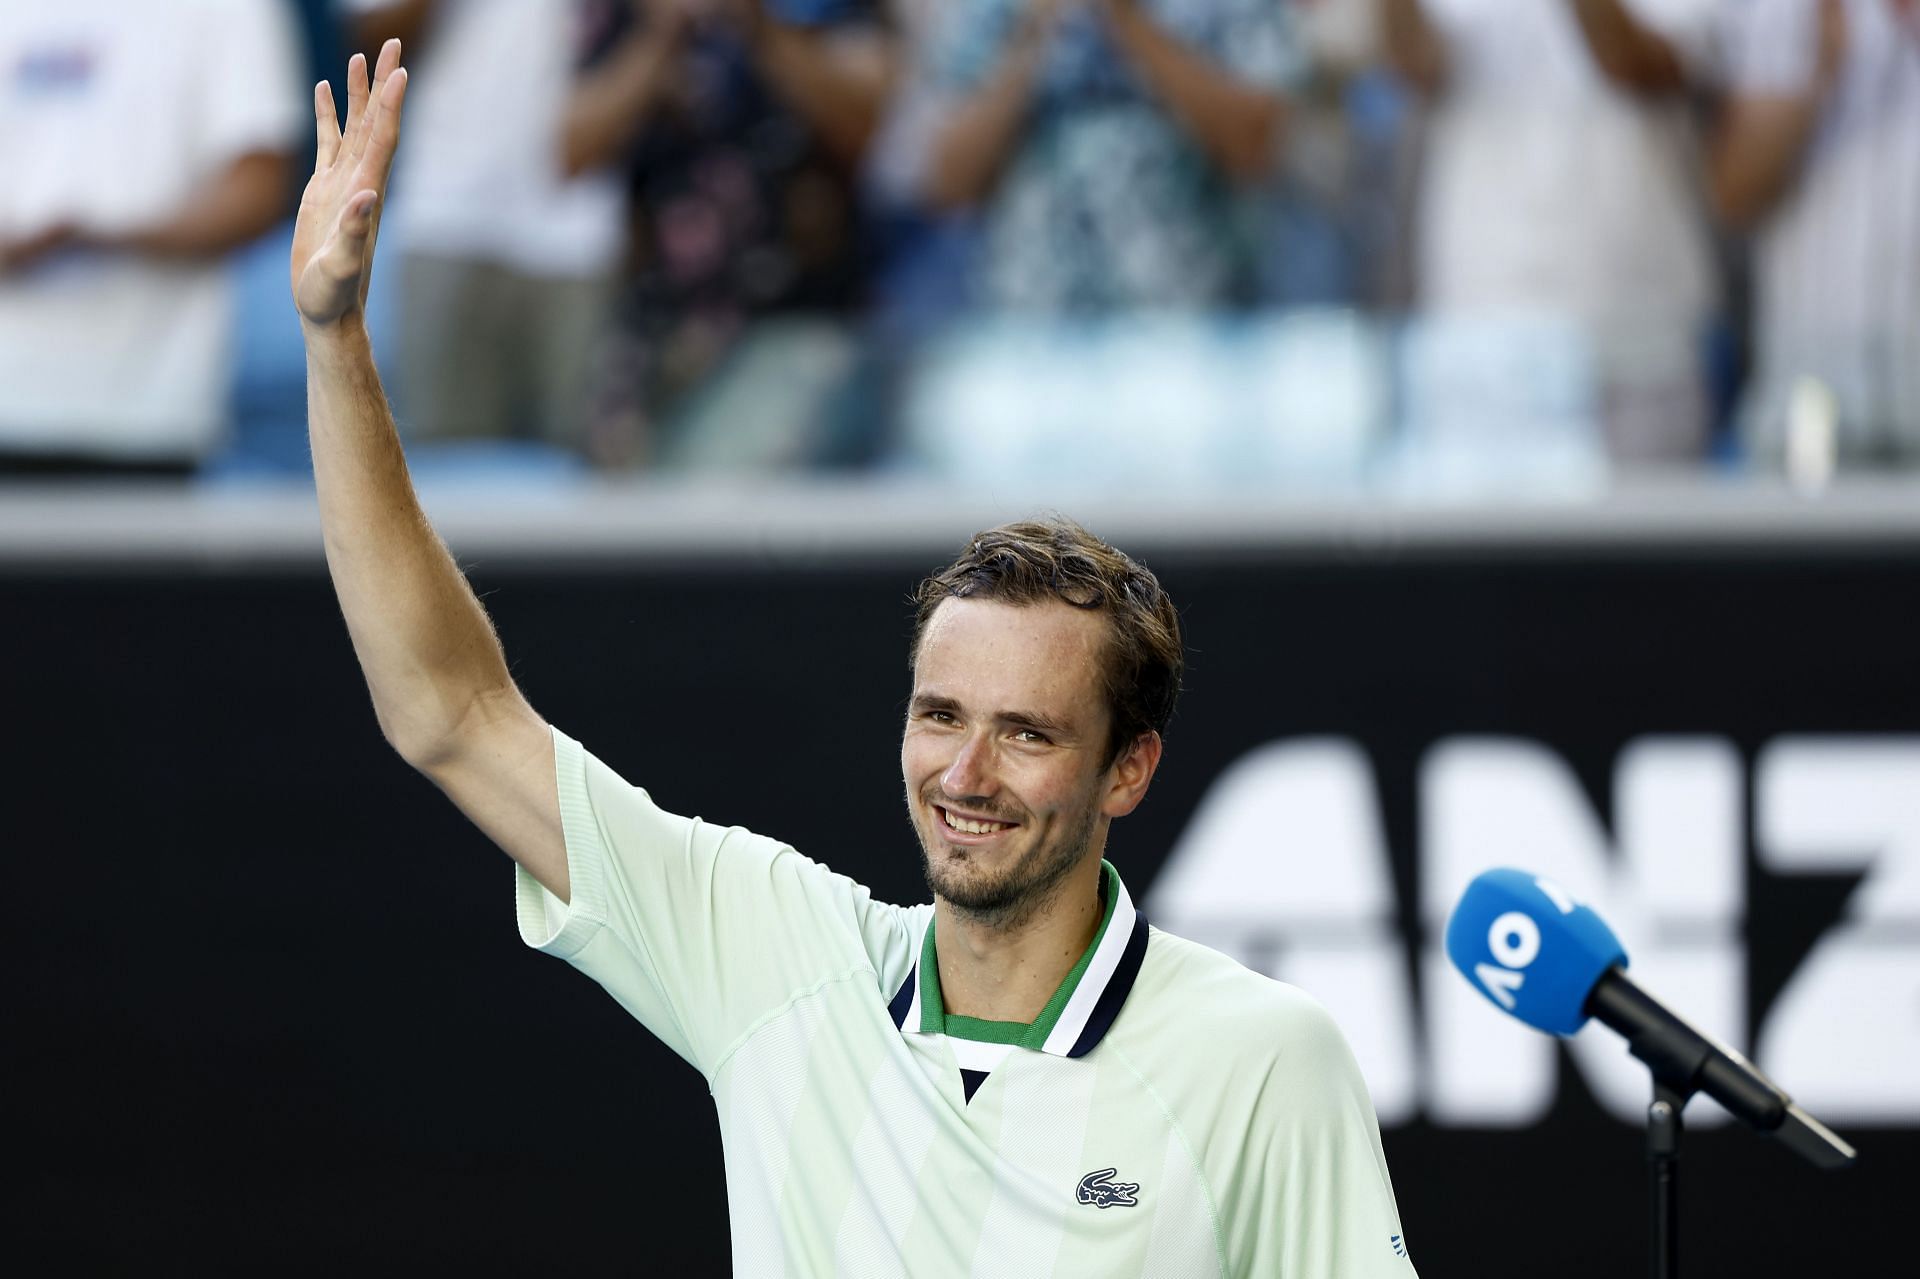 Daniil Medvedev waves to the crowd following his victory over Botic van de Zandschulp in the third roud of Australian Open 2022